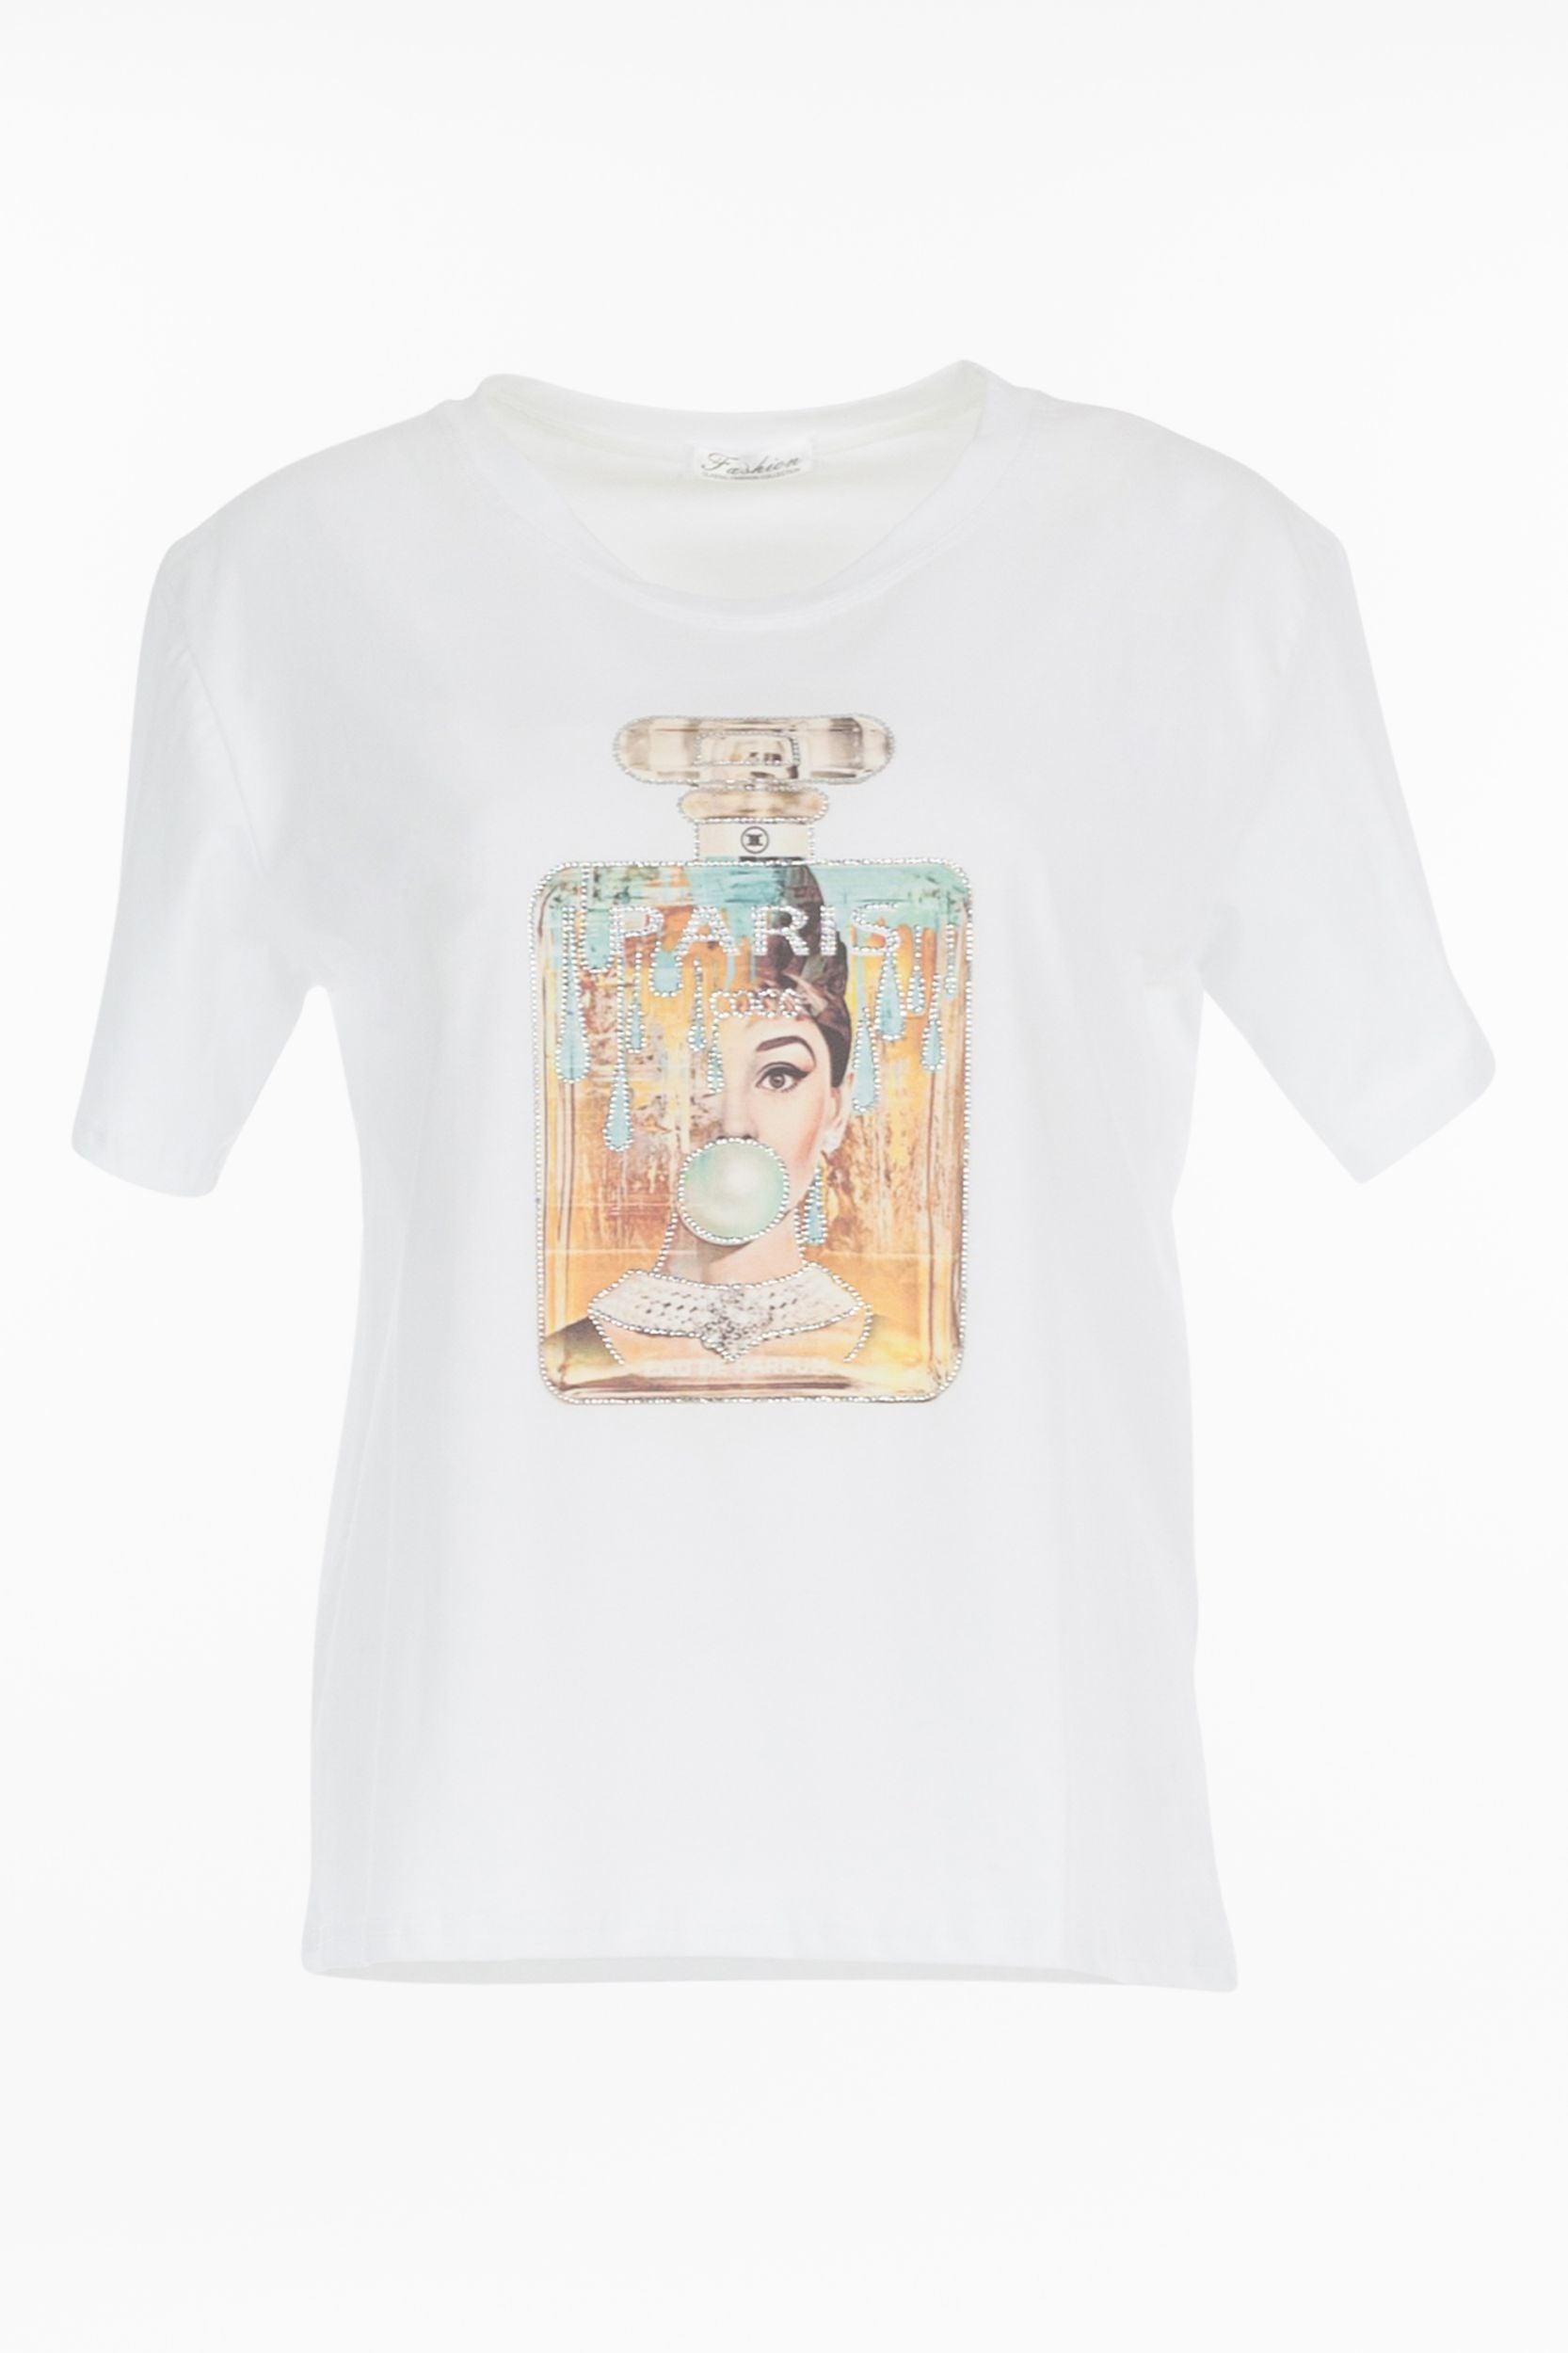 T-Shirt "Audrey Hepburn" - La Strada